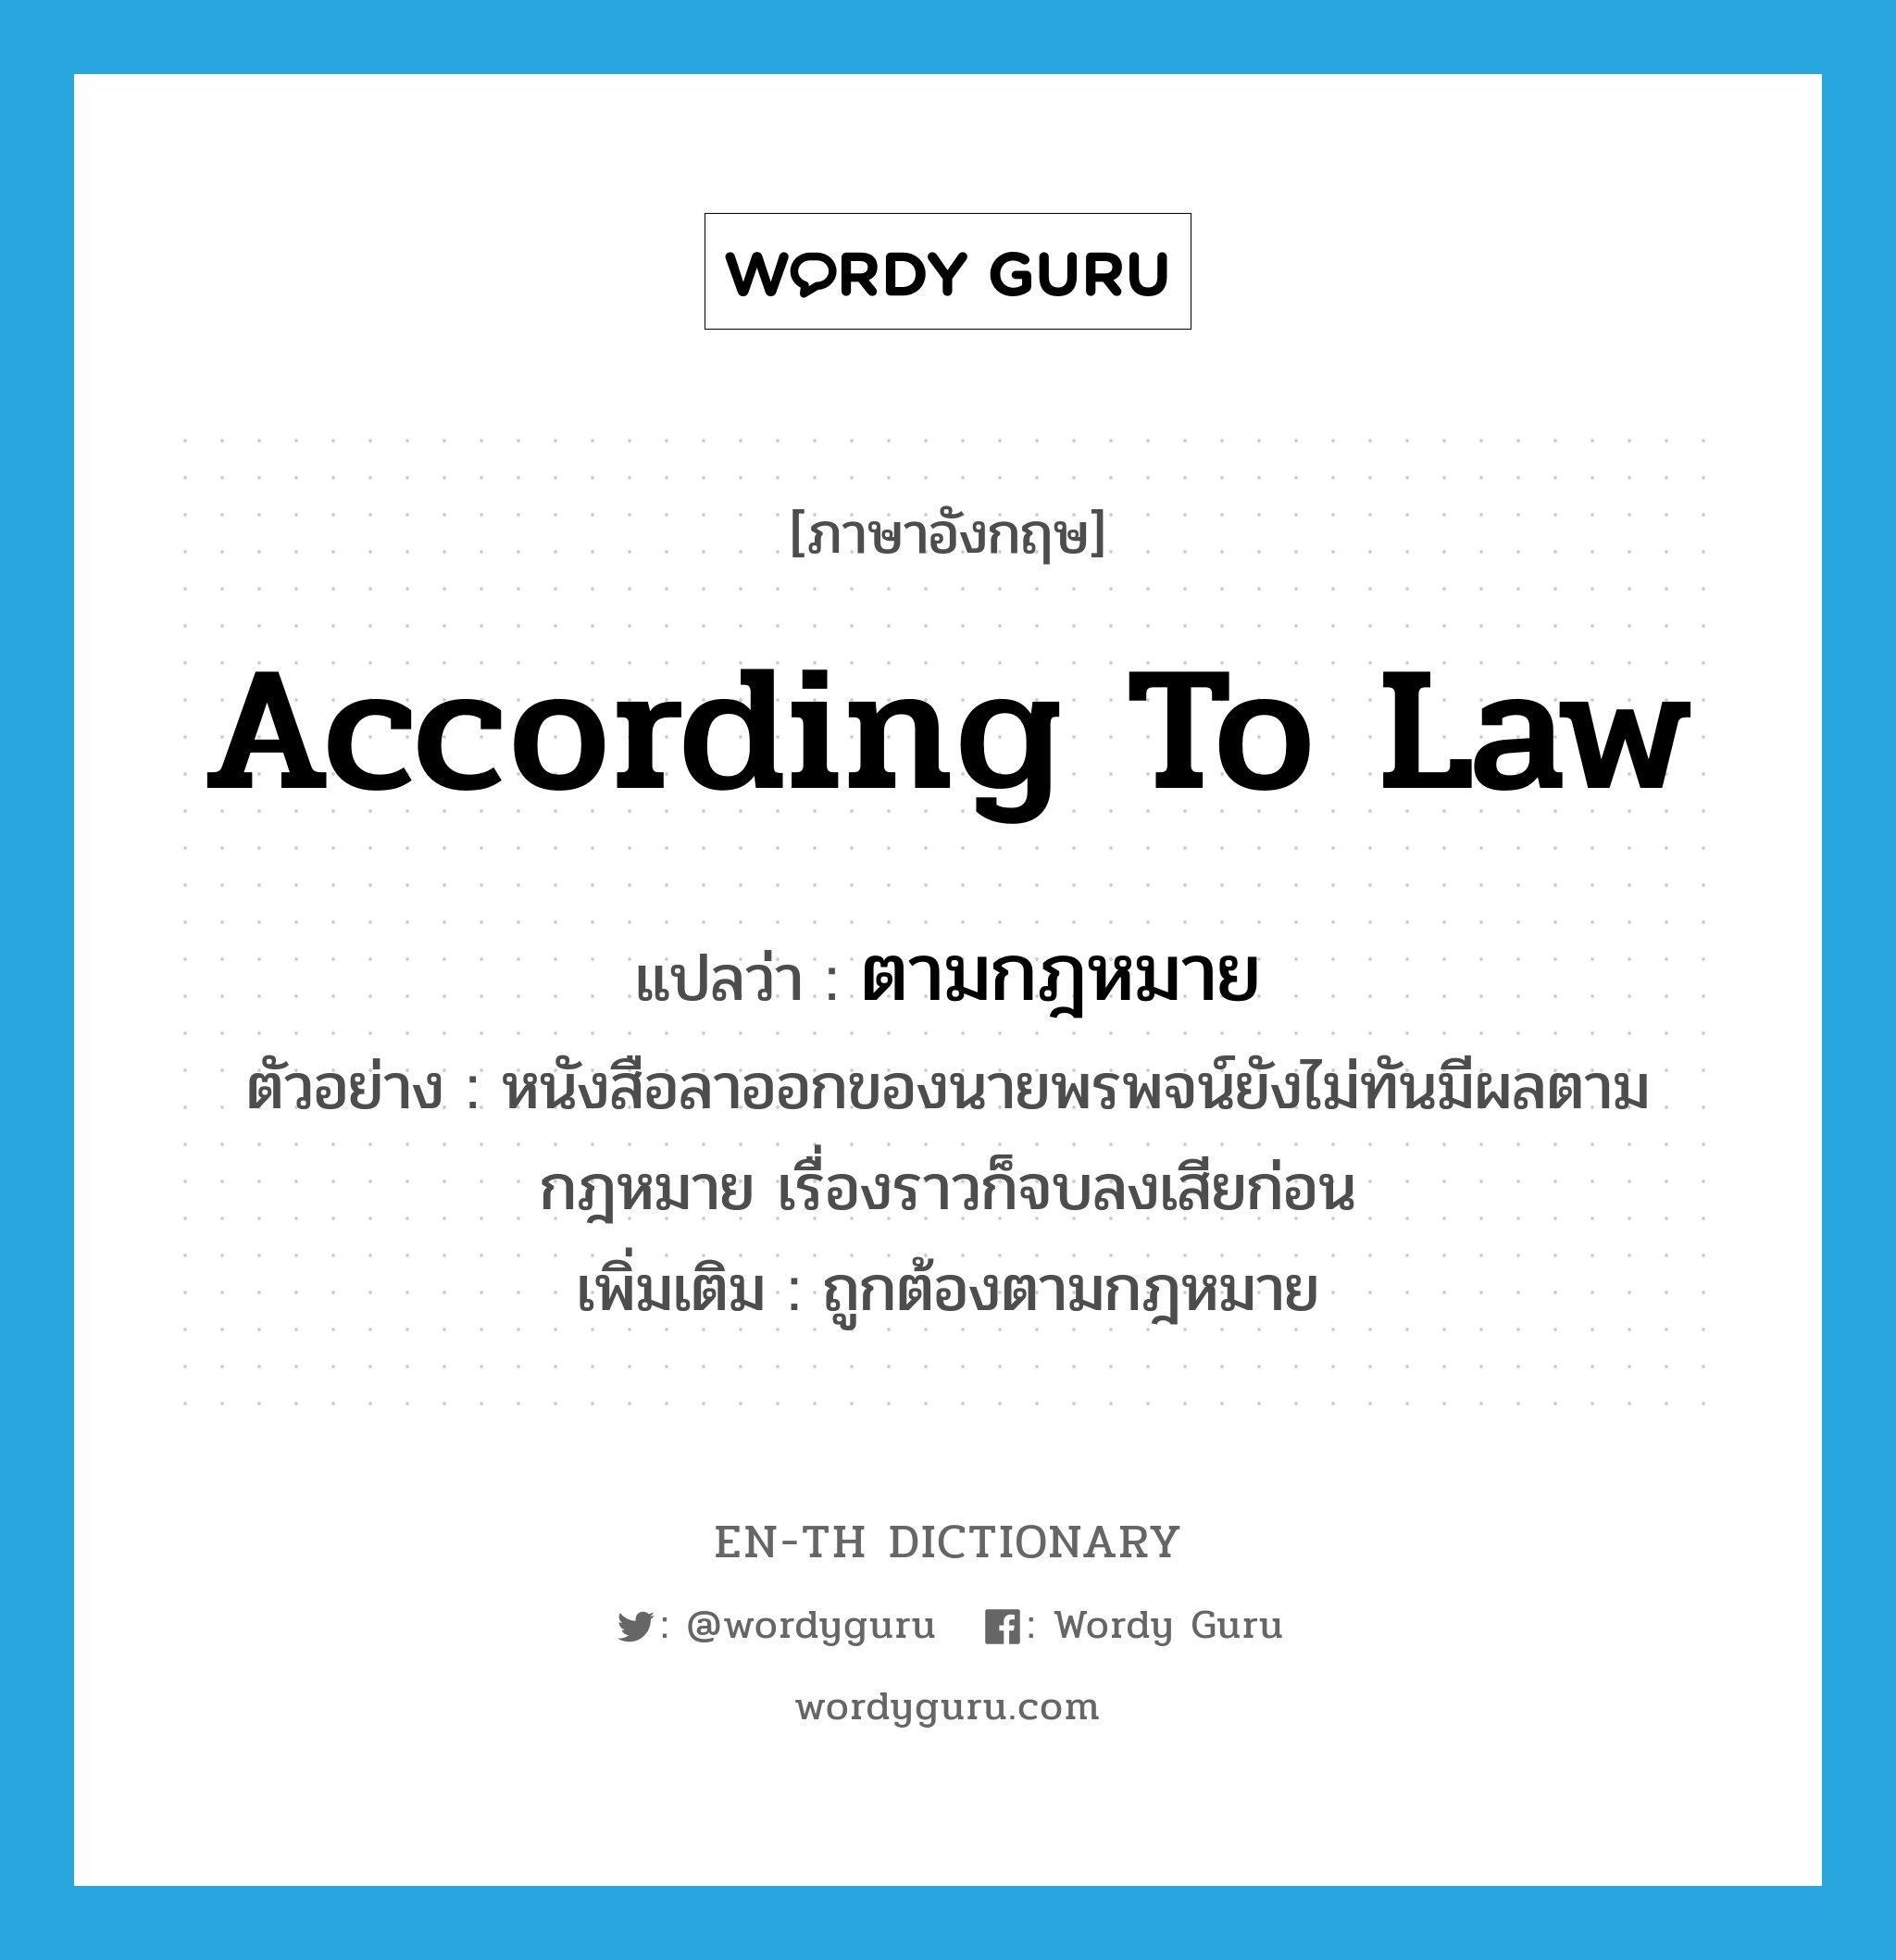 ตามกฎหมาย ภาษาอังกฤษ?, คำศัพท์ภาษาอังกฤษ ตามกฎหมาย แปลว่า according to law ประเภท ADV ตัวอย่าง หนังสือลาออกของนายพรพจน์ยังไม่ทันมีผลตามกฎหมาย เรื่องราวก็จบลงเสียก่อน เพิ่มเติม ถูกต้องตามกฎหมาย หมวด ADV